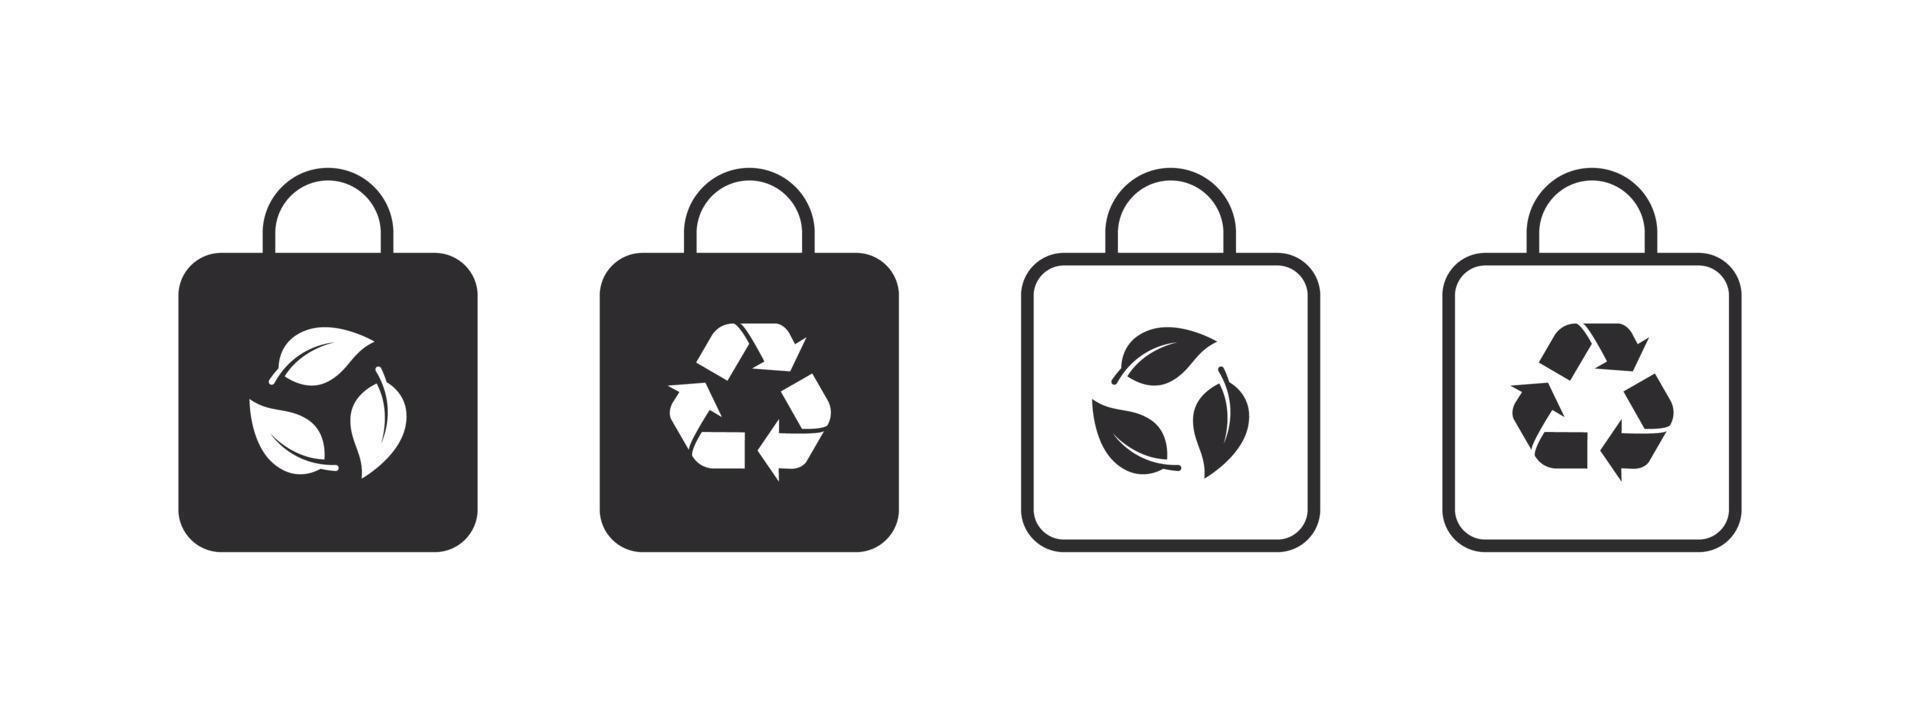 materiales reciclados. iconos de bolsas con carteles de reciclaje. embalaje y reciclaje. ilustración vectorial vector